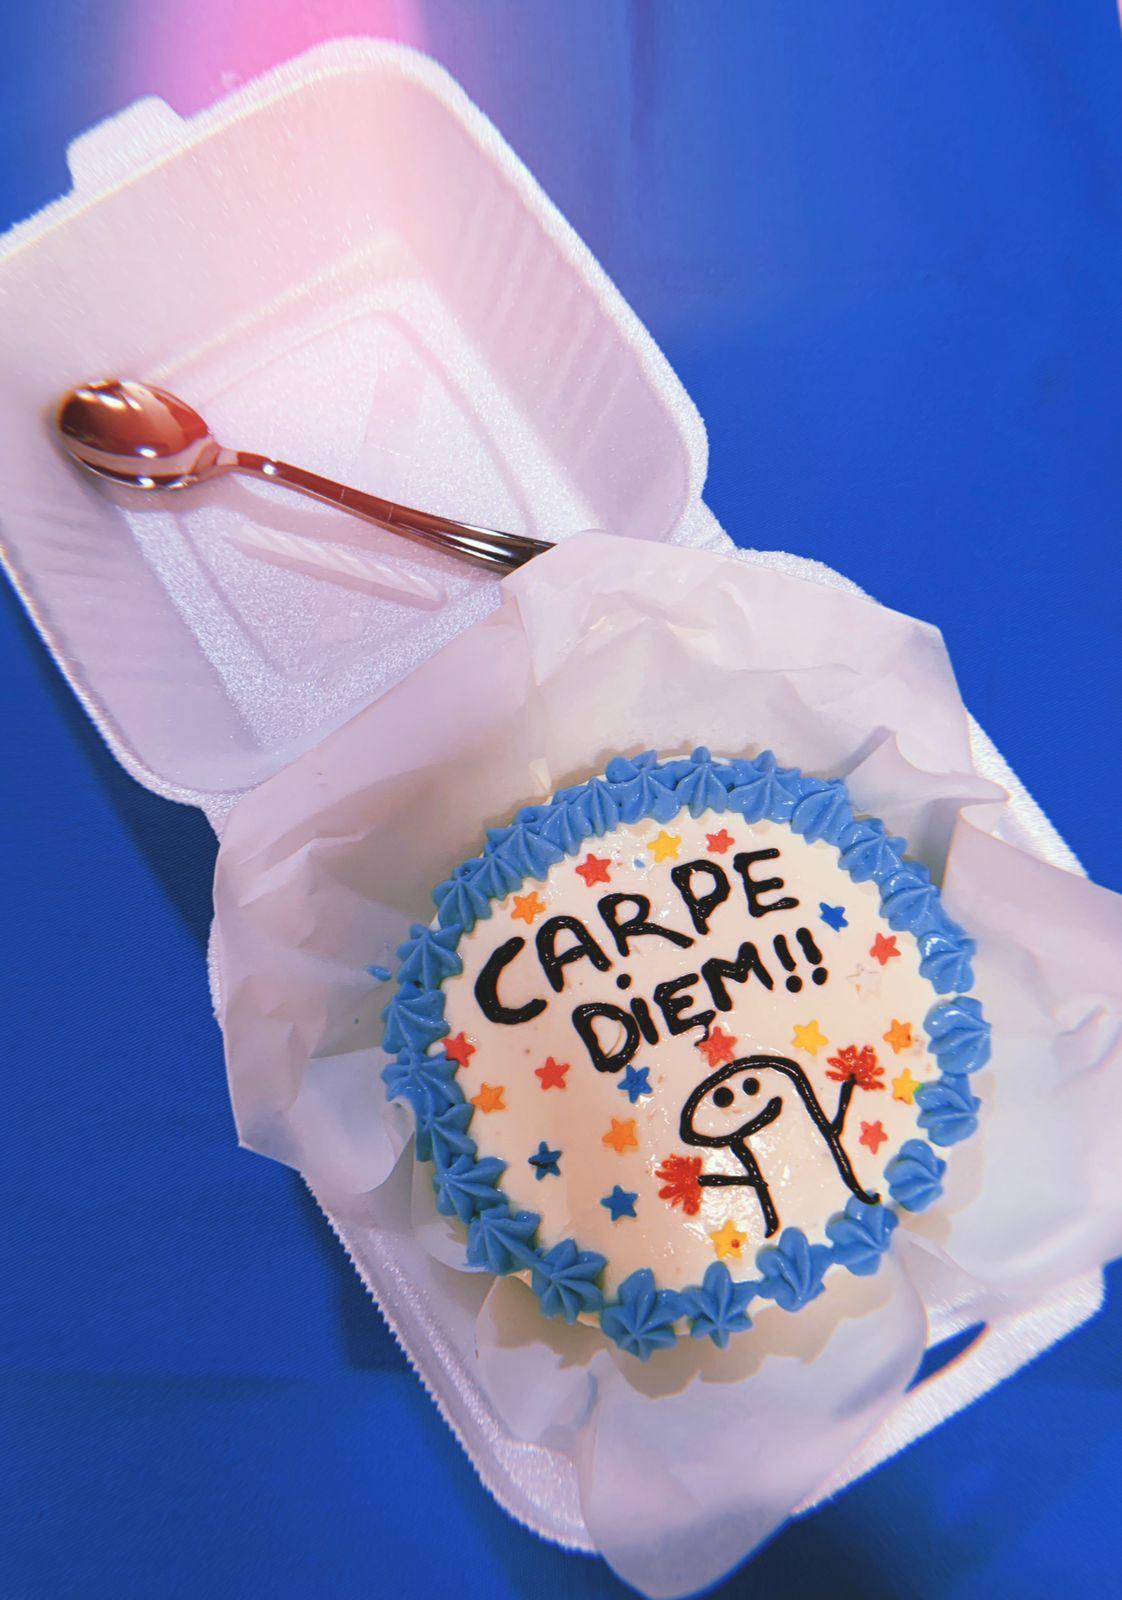 Bentô cake: minibolo com meme é o mais pedido em confeitaria na PB